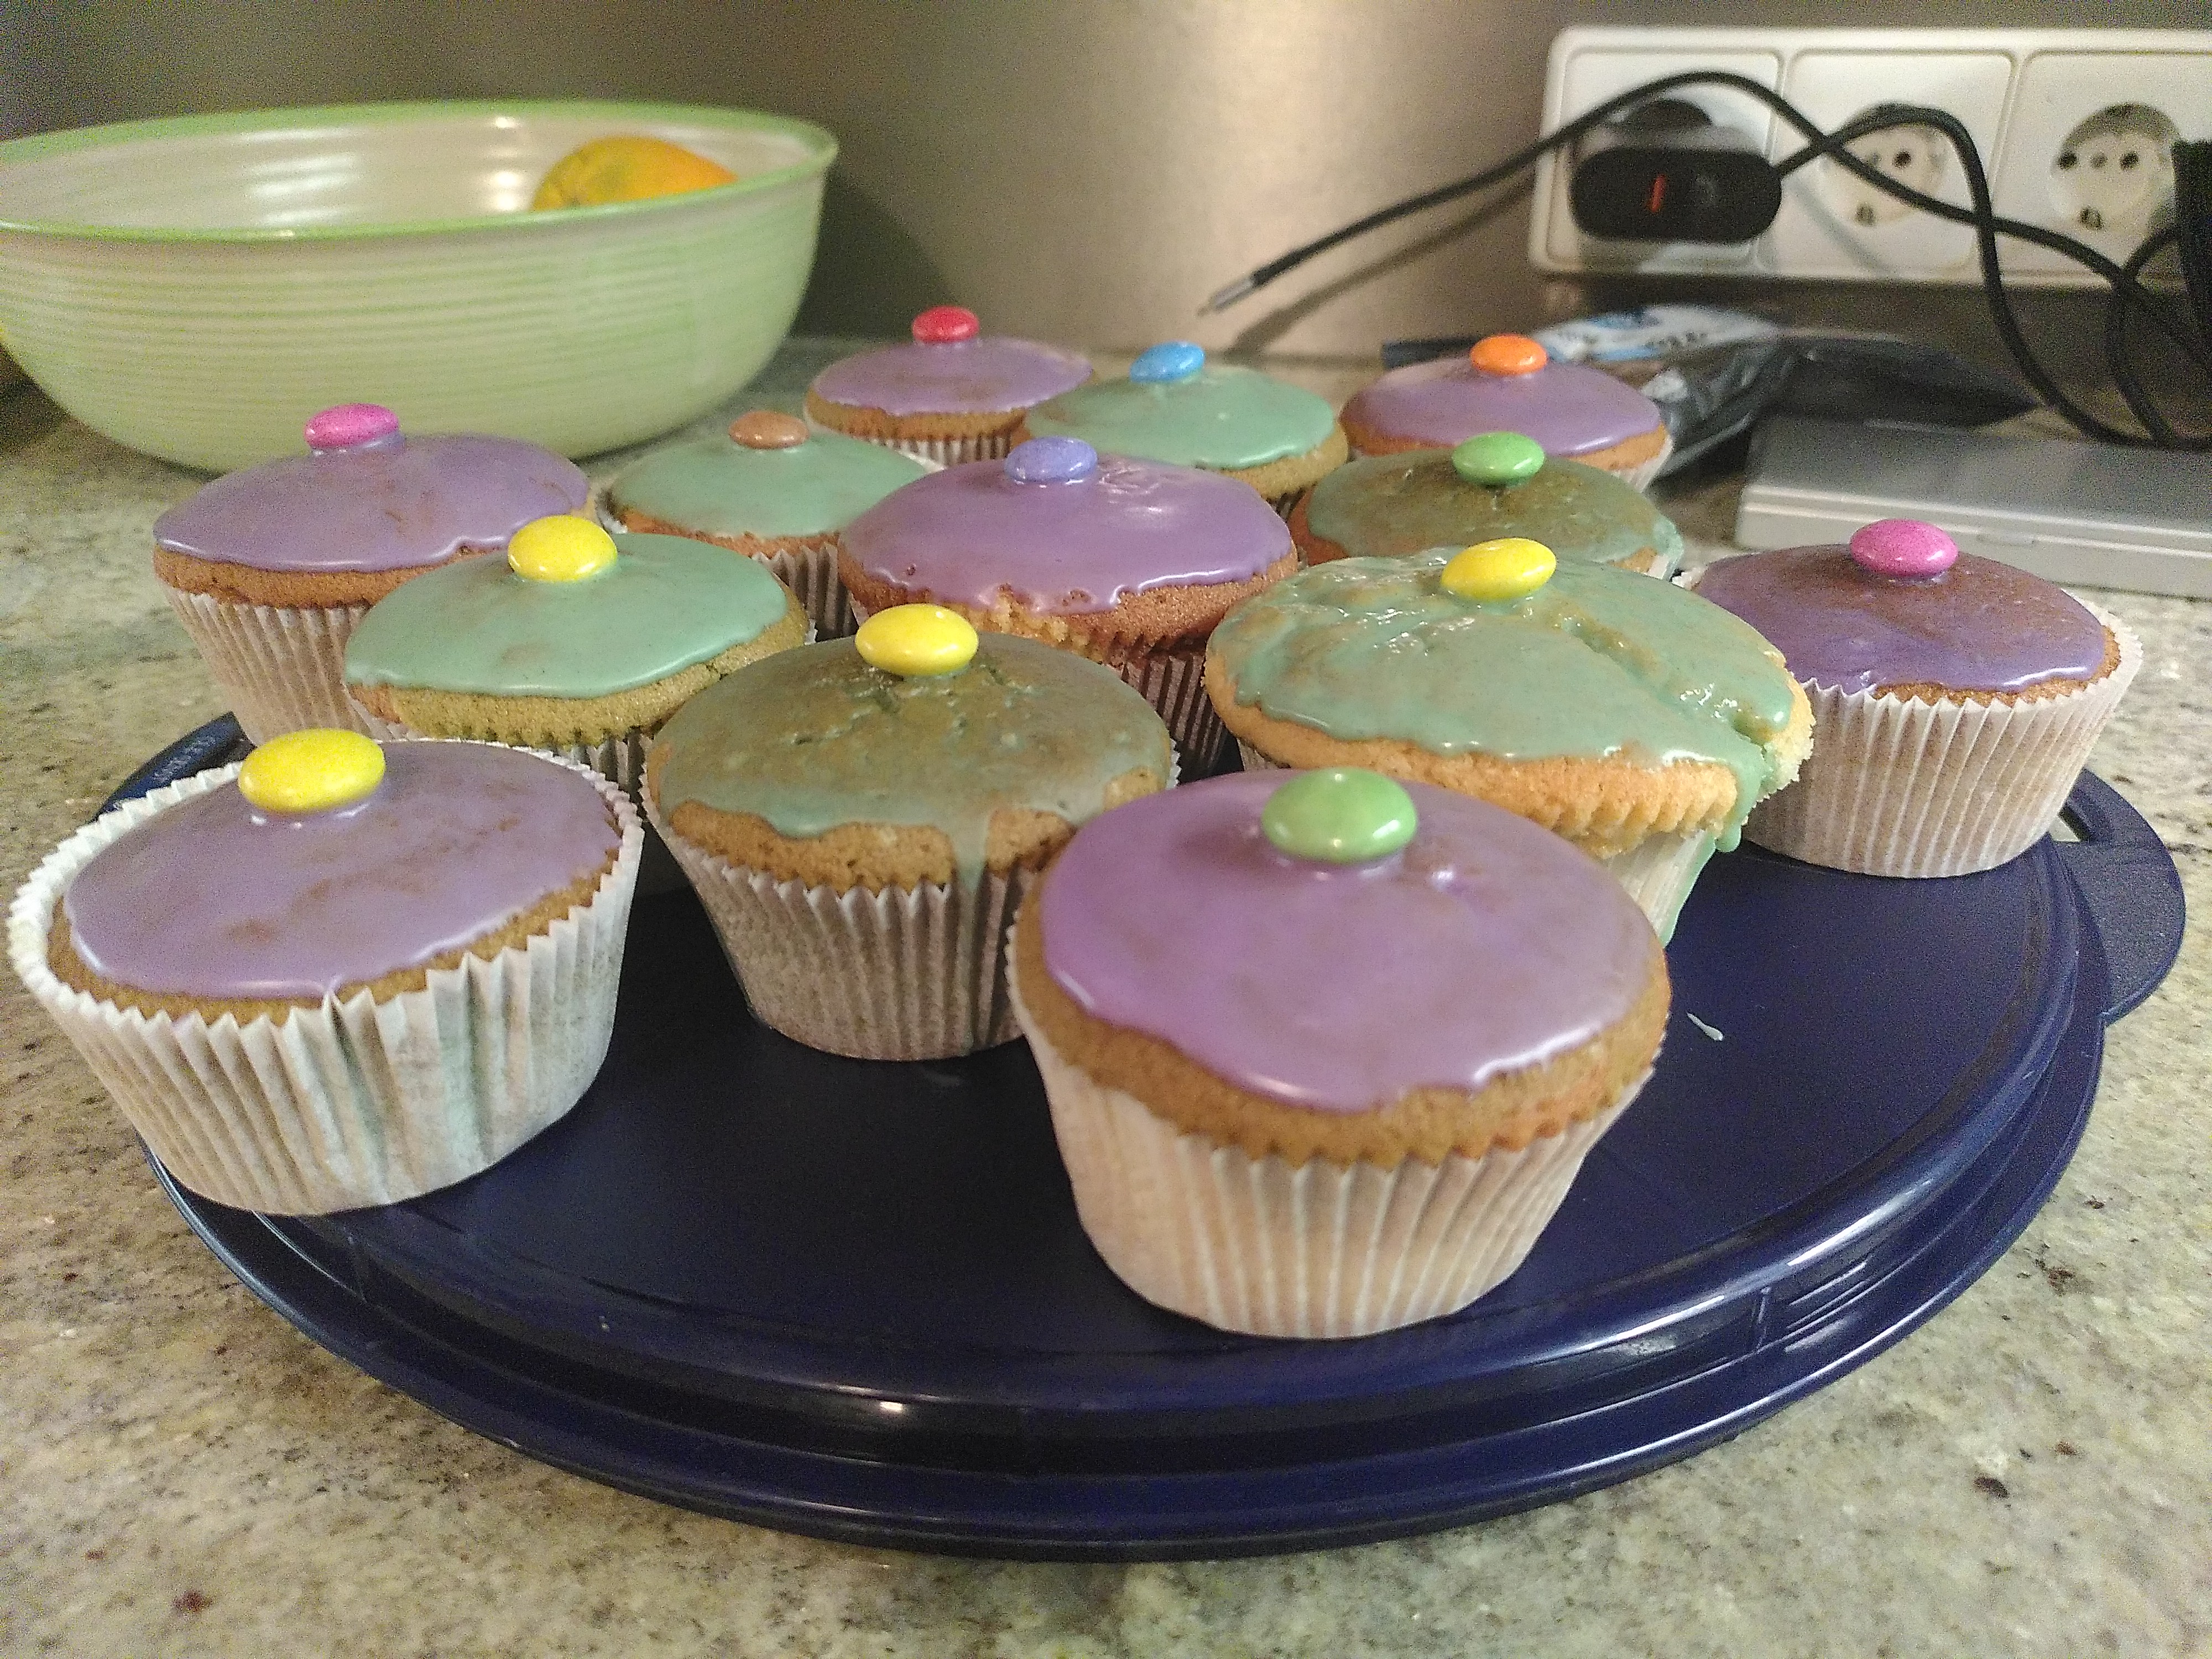 12 Muffins mit lila und grünem Zuckerguss uns jeweils einem bunten Smartie in der Mitte, stehen auf einer blauen Kuchenform aus Plastik.